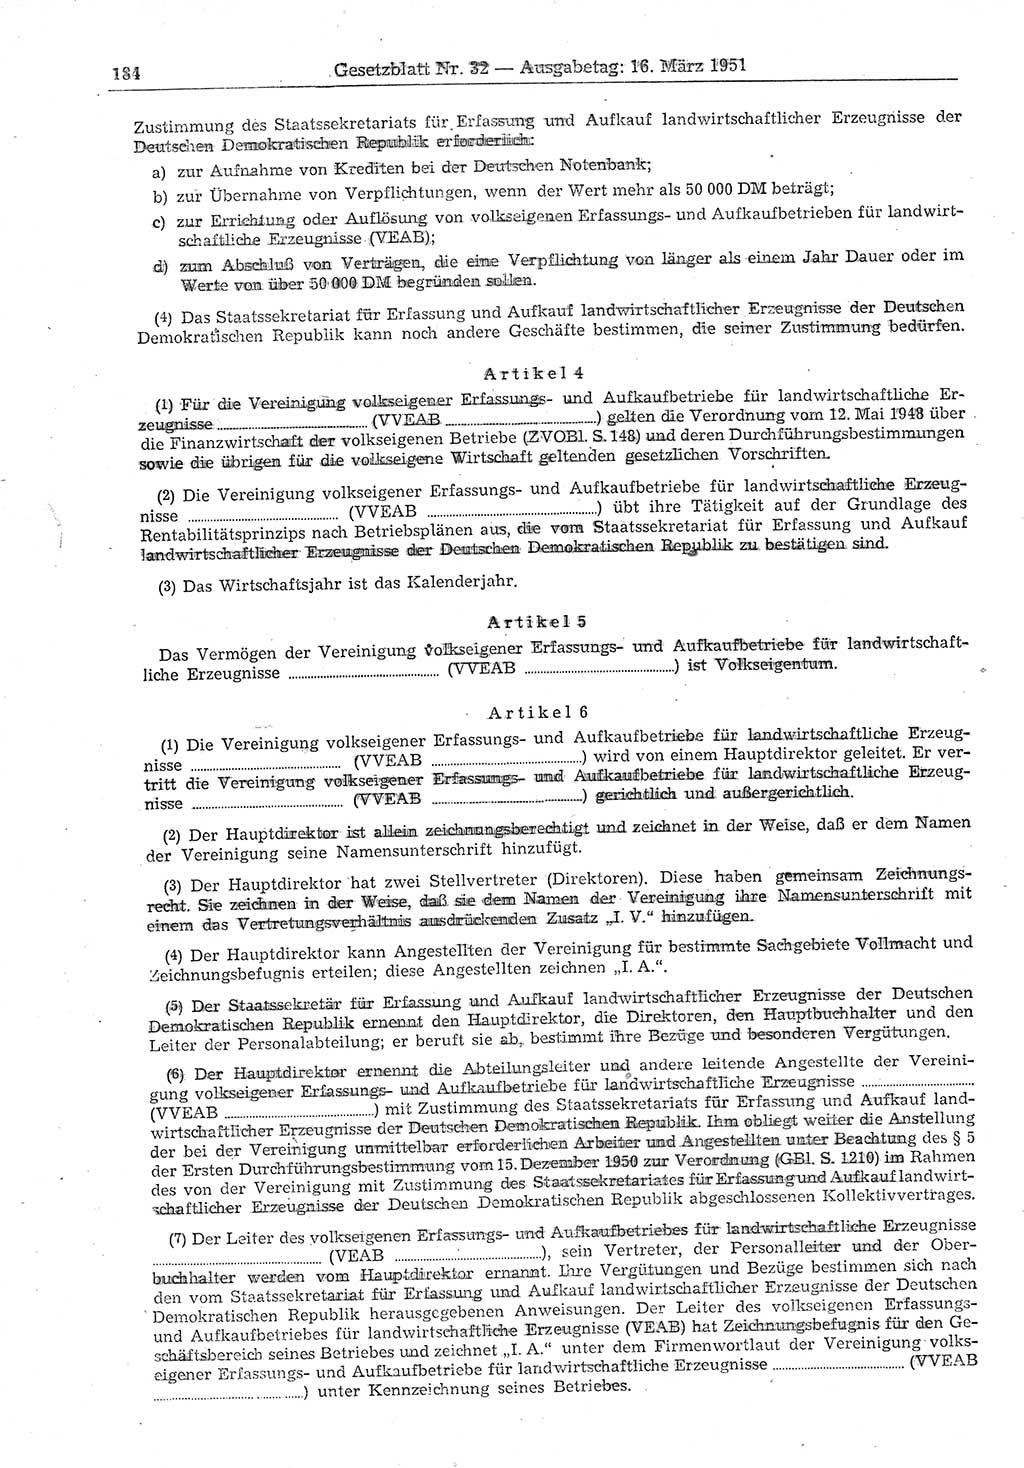 Gesetzblatt (GBl.) der Deutschen Demokratischen Republik (DDR) 1951, Seite 184 (GBl. DDR 1951, S. 184)